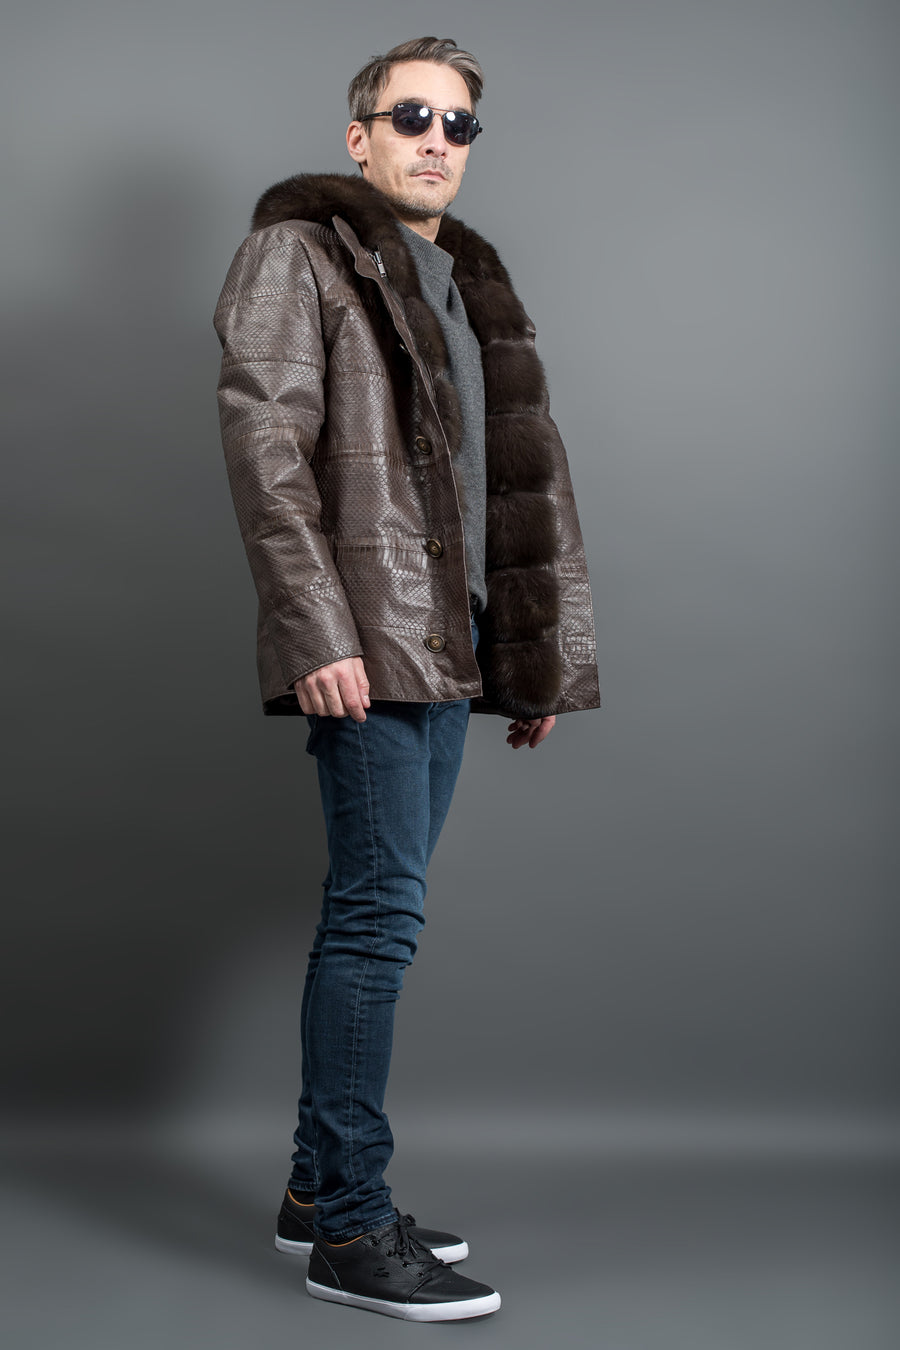 Luxury Python leather and sable fur jacket – Fur Caravan